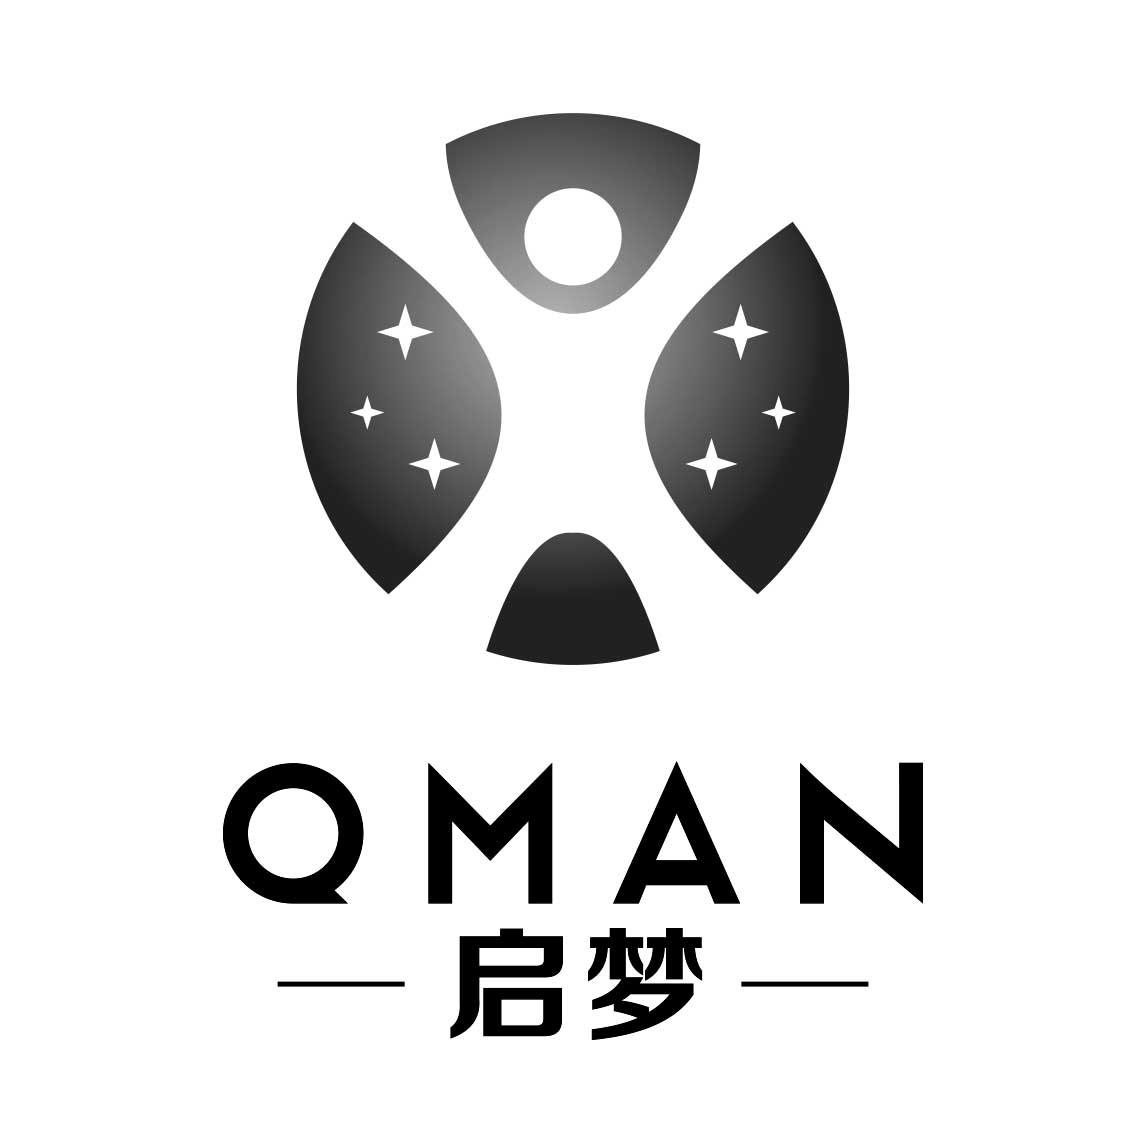 启梦 qman 商标公告